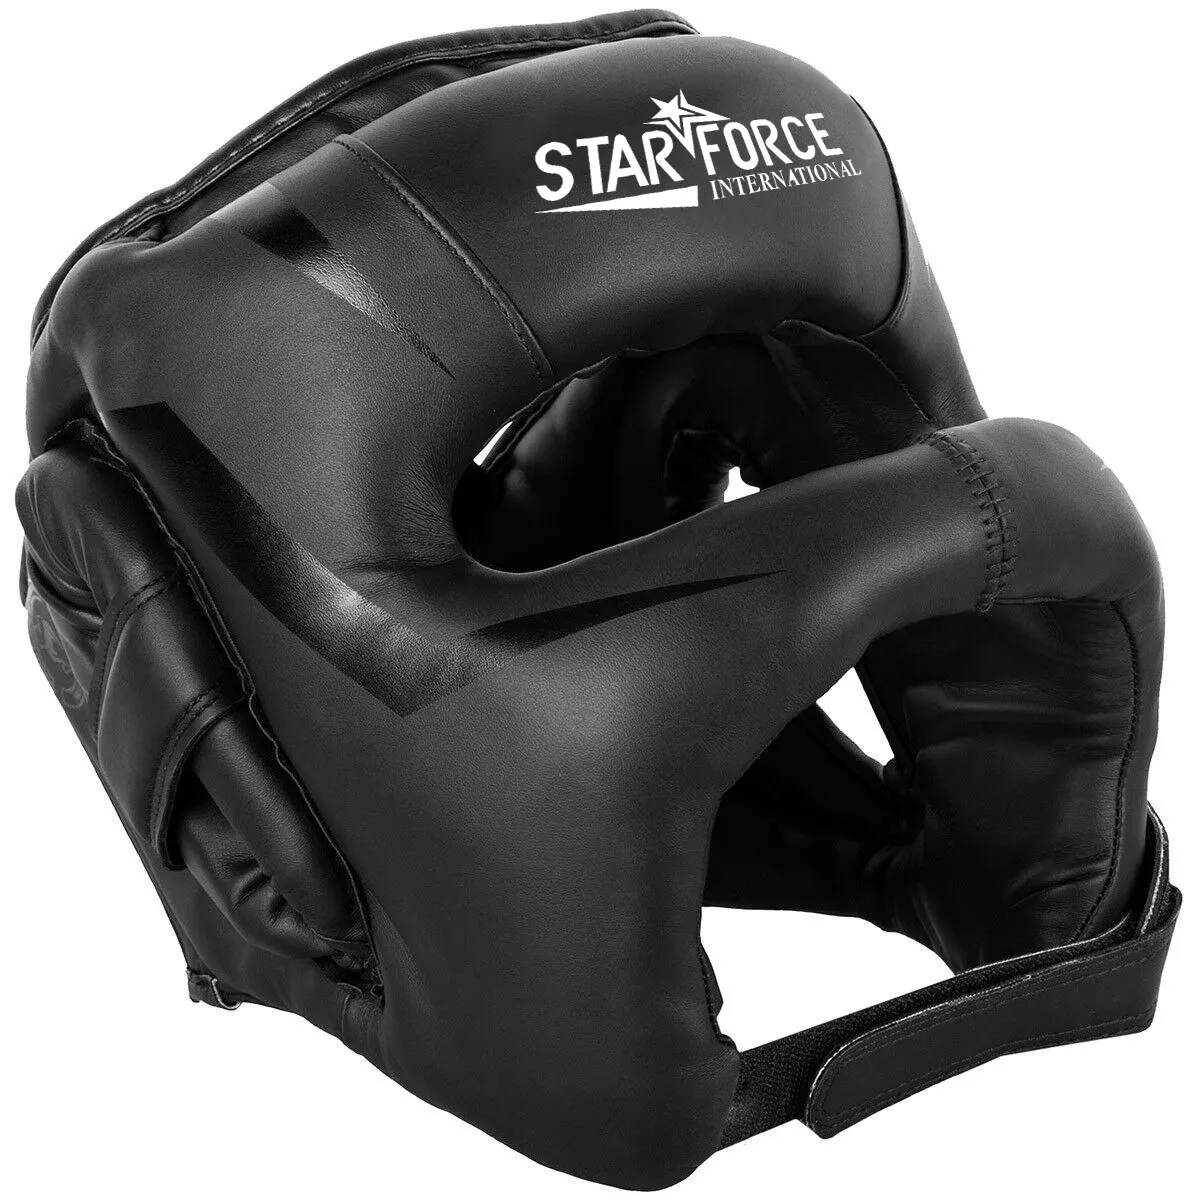 Дешевый прочный боксерский шлем, боксерская защита для головы